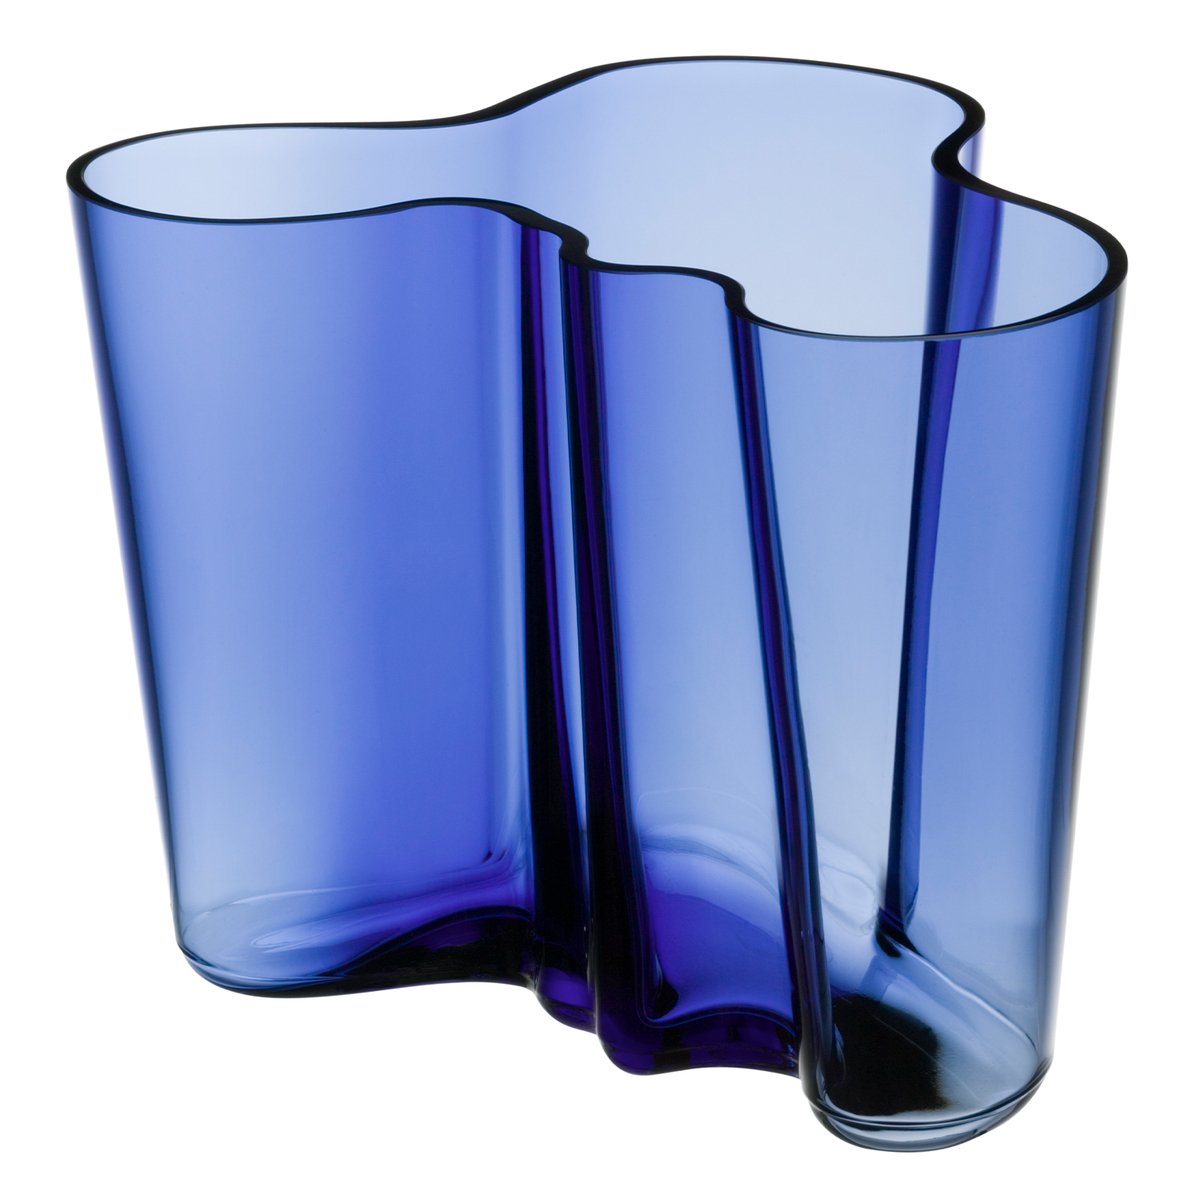 専用です】aalto vase smoky blue スモーキーブルー 160 | www 